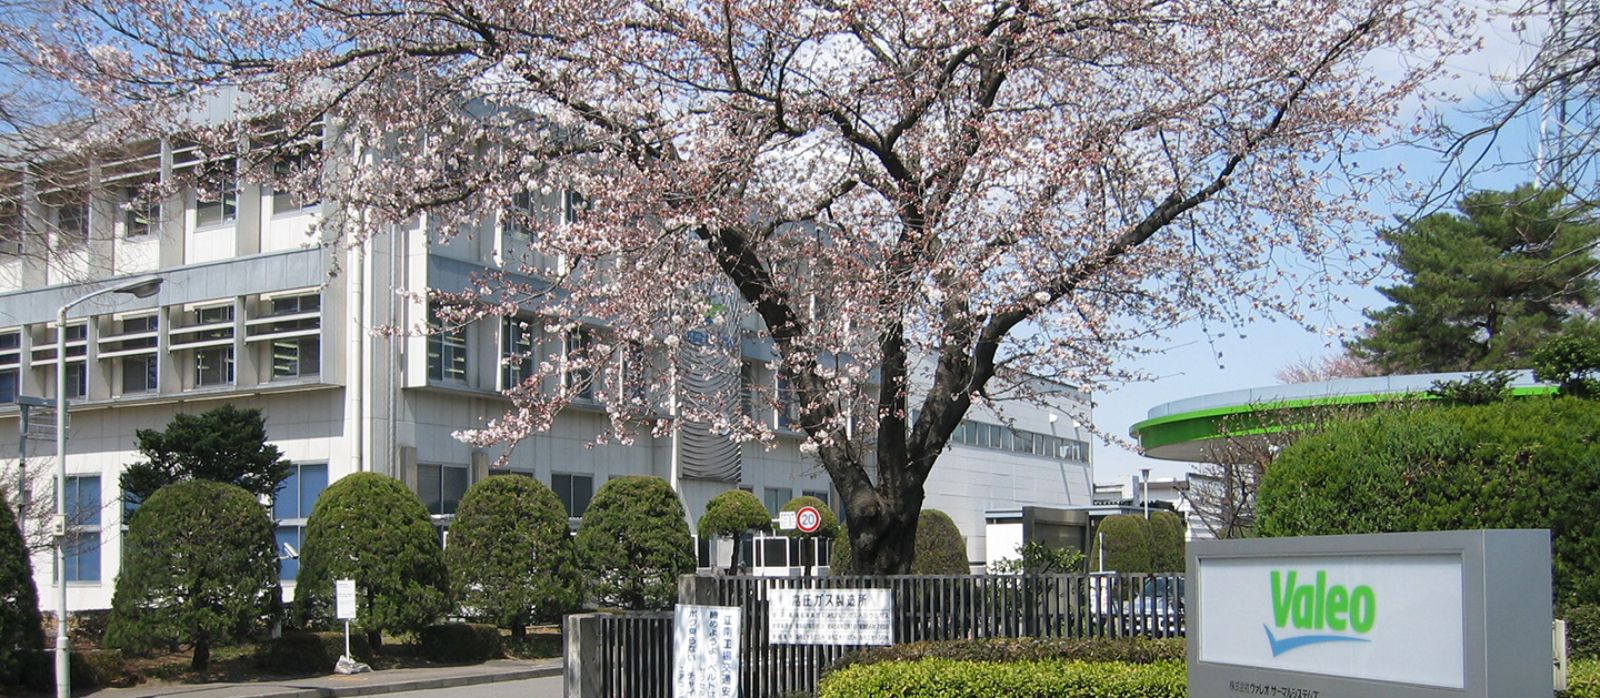 Valeo plant in Kohnan Japan Banner